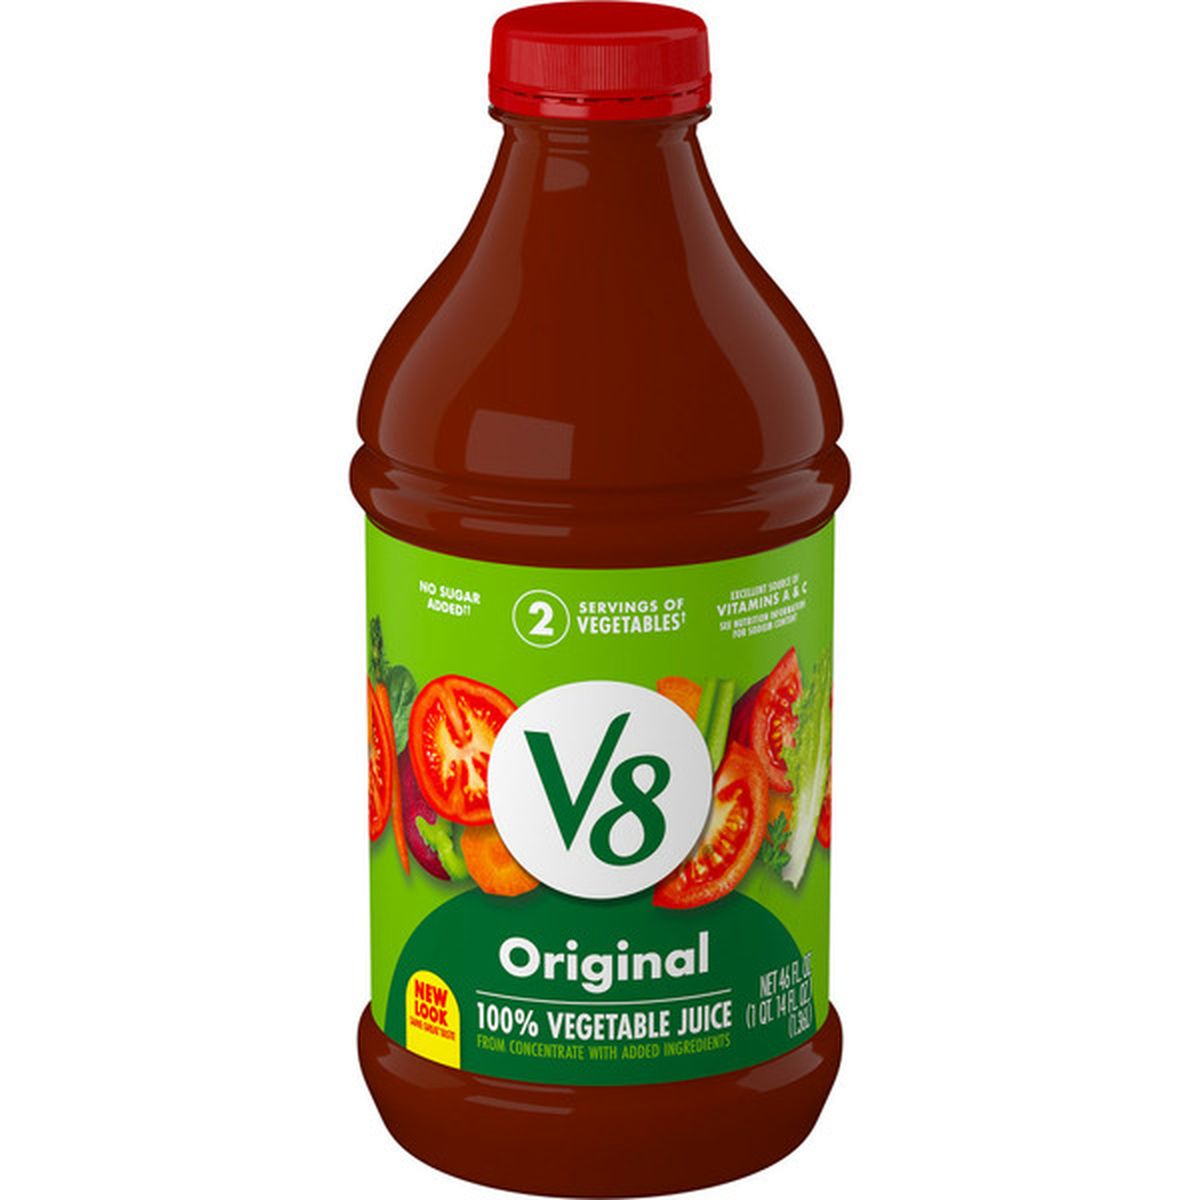 V8 Original 100% Vegetable Juice (46 fl oz) Delivery or Pickup Near Me -  Instacart